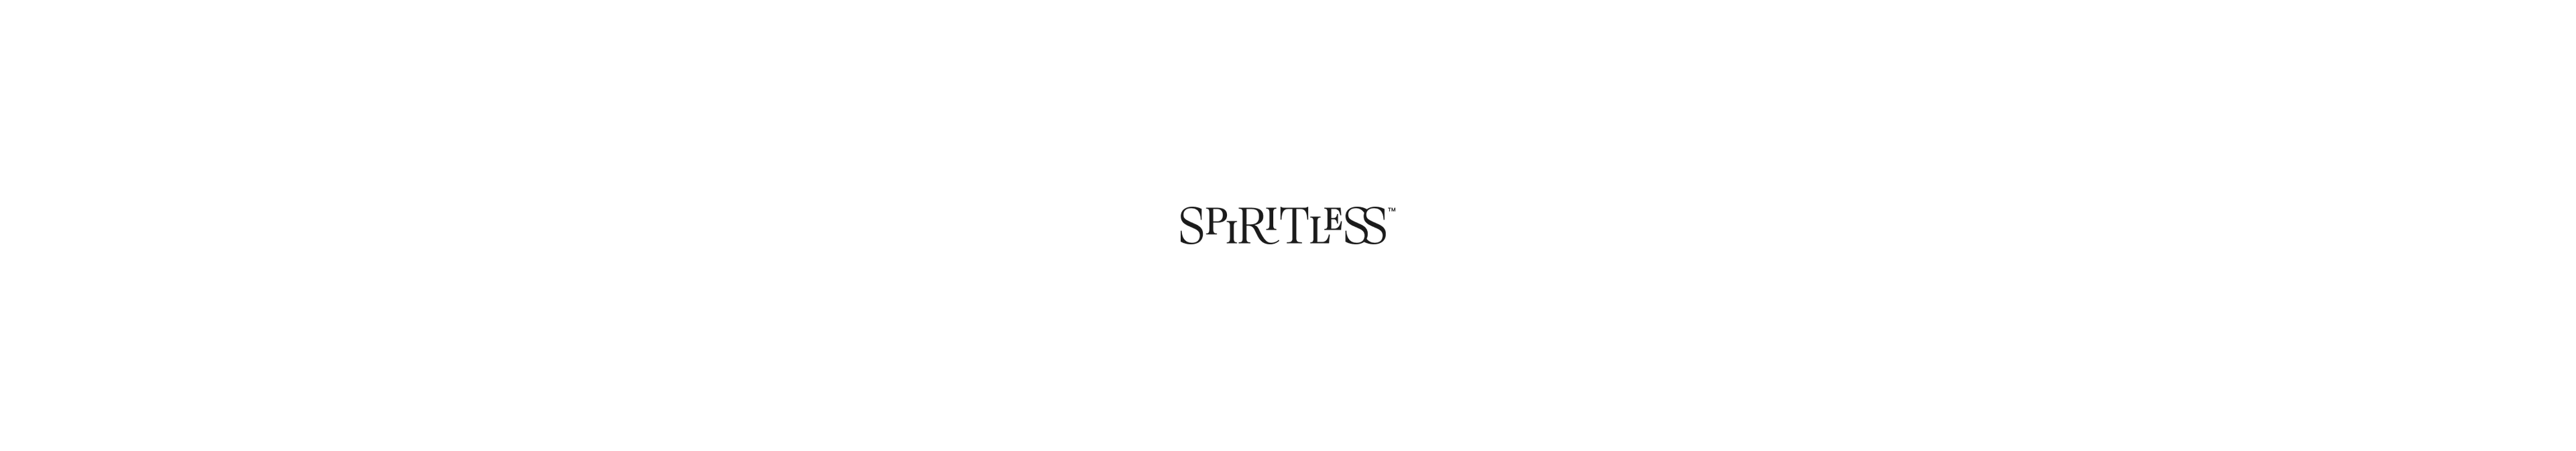 spiritless